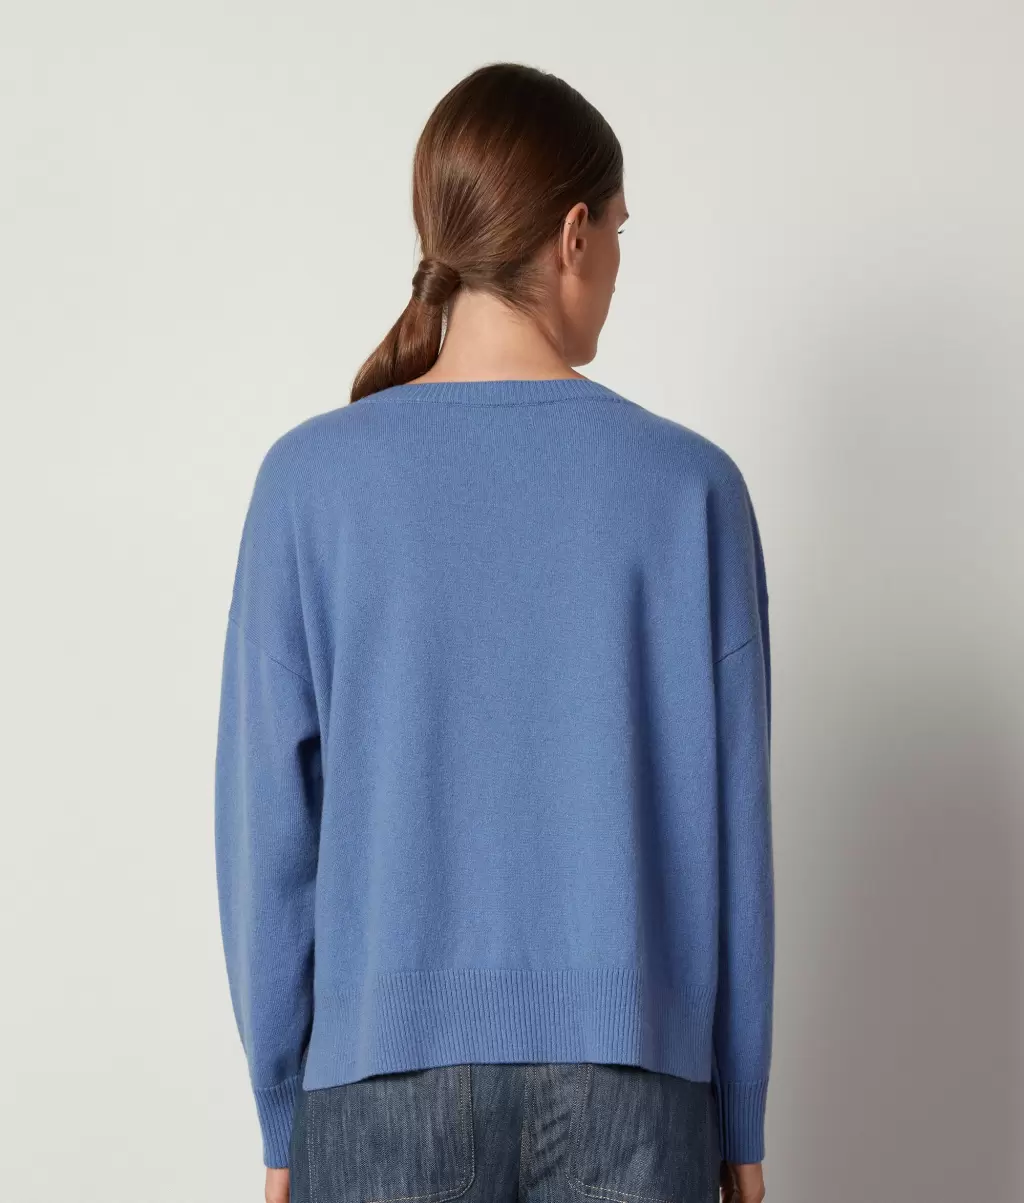 Falconeri Swetry Z Okrągłym Dekoltem Sweter Z Okrągłym Dekoltem I Rozcięciami Z Kaszmiru Ultrasoft Kobieta Light_Blue - 2